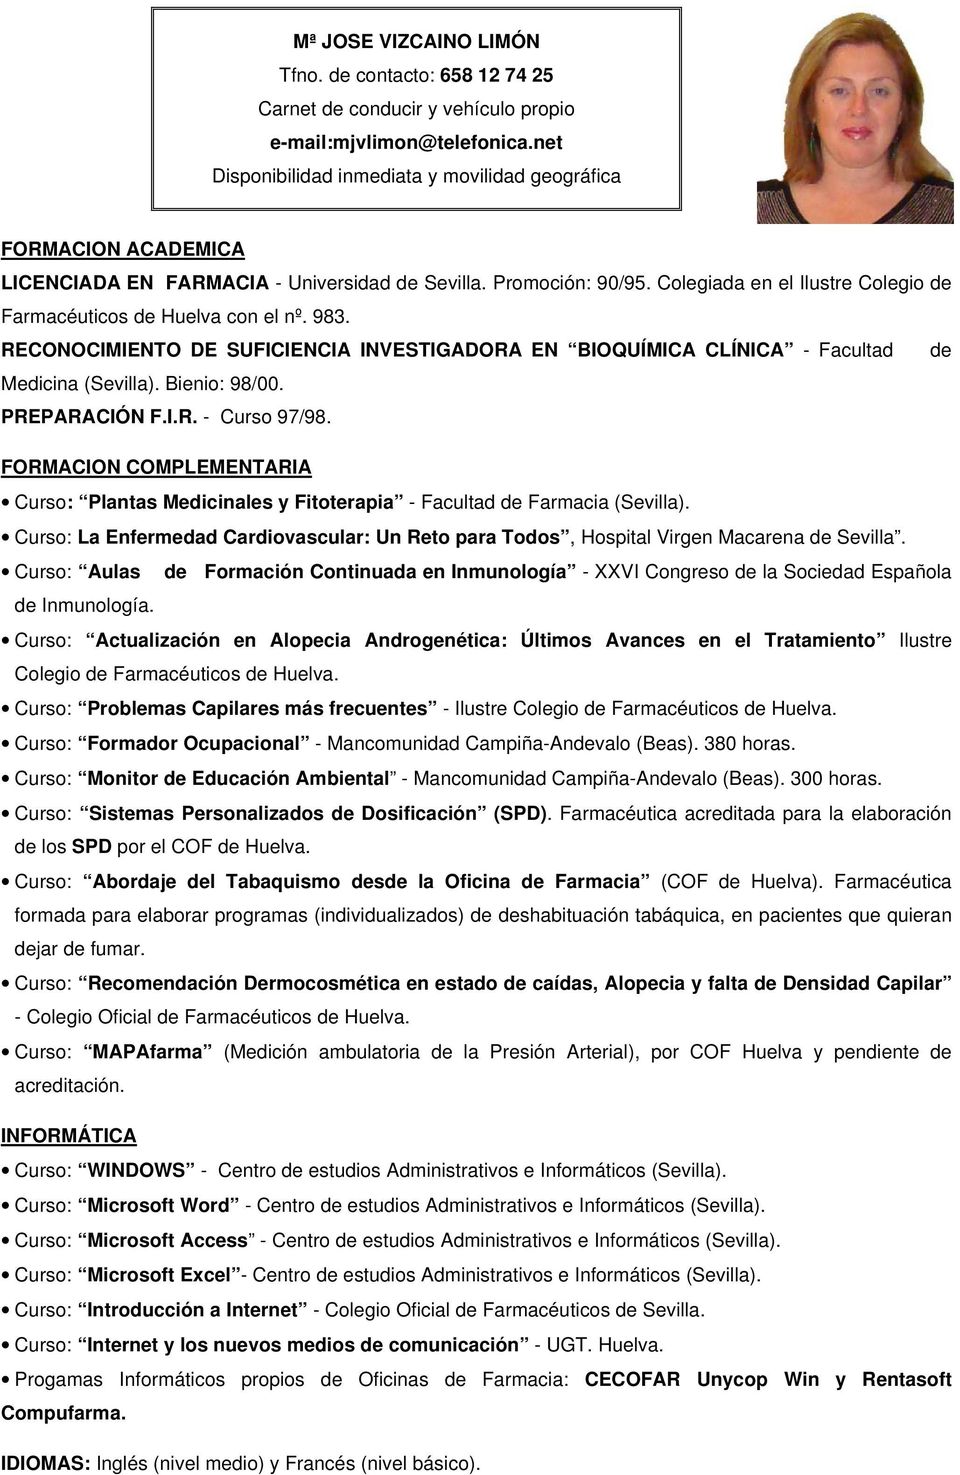 Colegiada en el Ilustre Colegio de Farmacéuticos de Huelva con el nº. 983. RECONOCIMIENTO DE SUFICIENCIA INVESTIGADORA EN BIOQUÍMICA CLÍNICA - Facultad de Medicina (Sevilla). Bienio: 98/00.